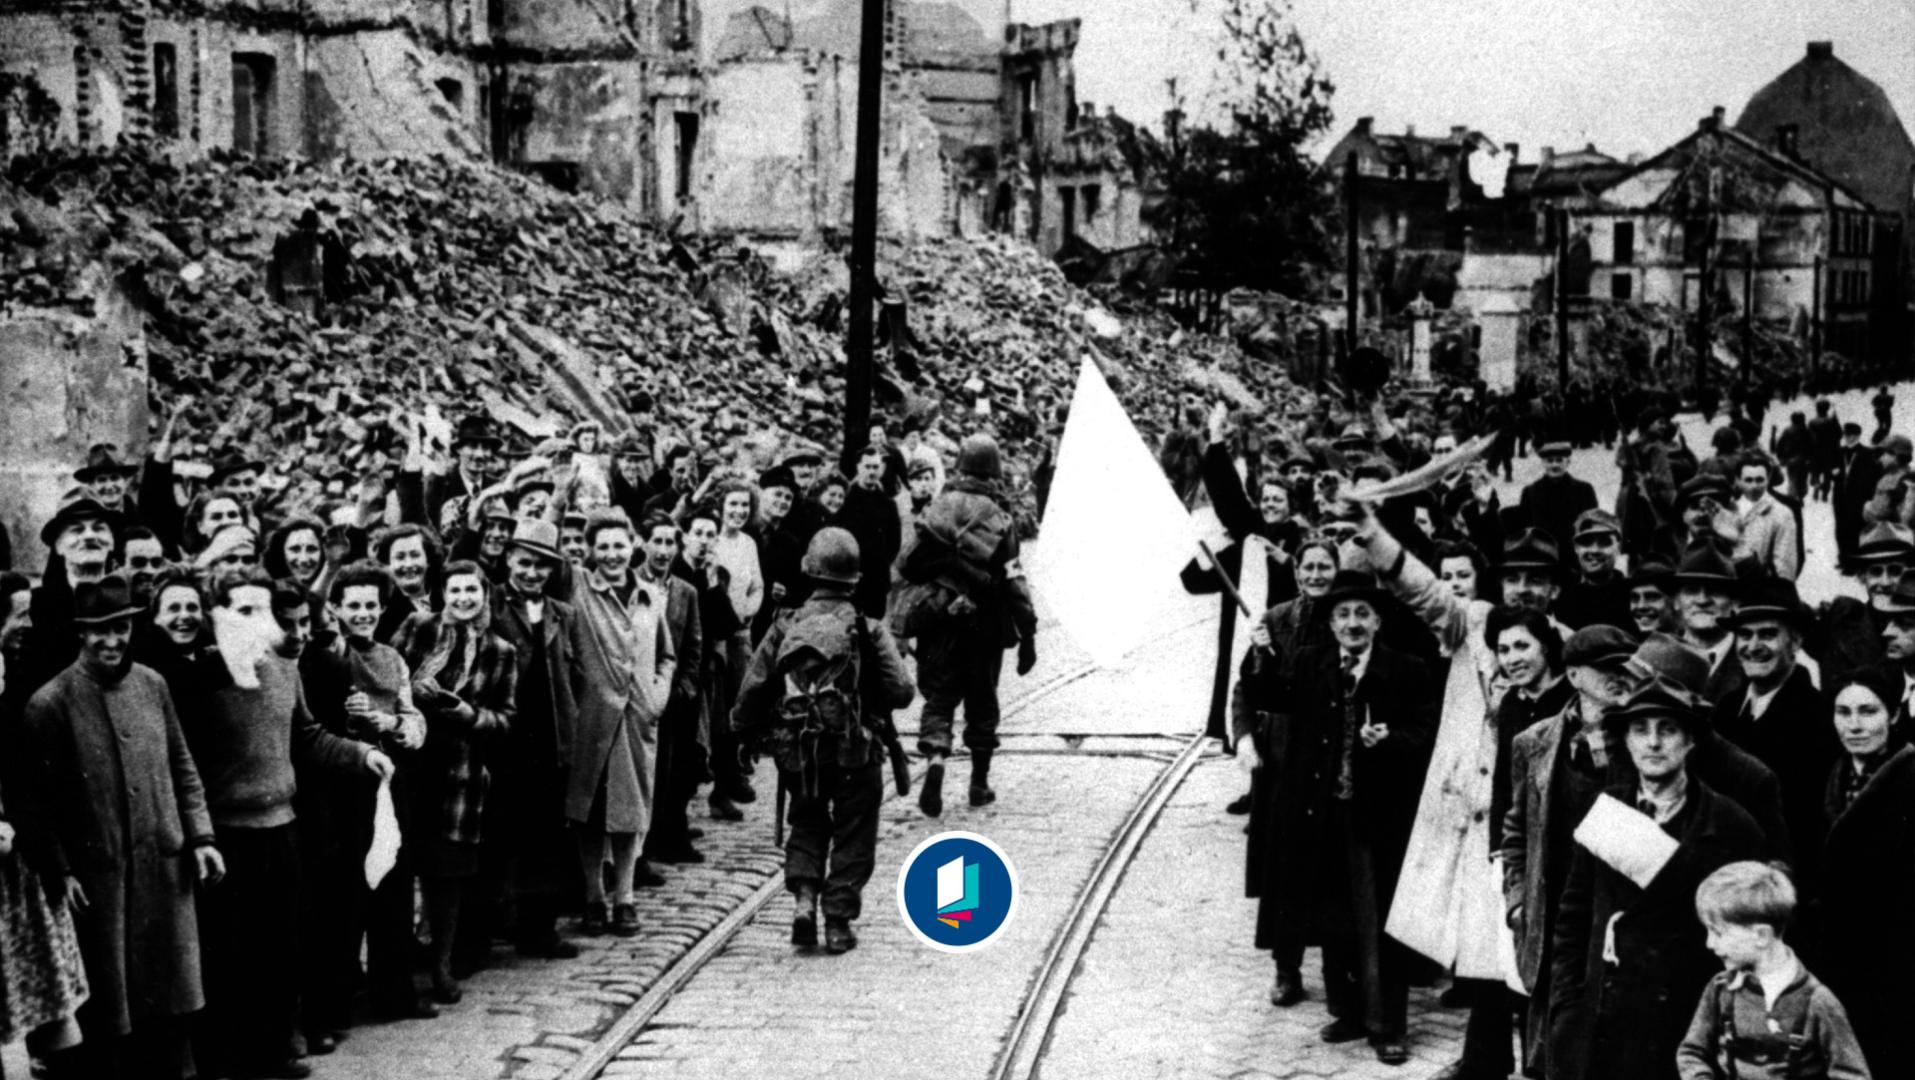 US-Infantristen der 7. U.S. Army marschieren nach der Eroberung der Stadt durch das zerstörte München, begrüßt von der Bevölkerung mit weißer Fahne. 